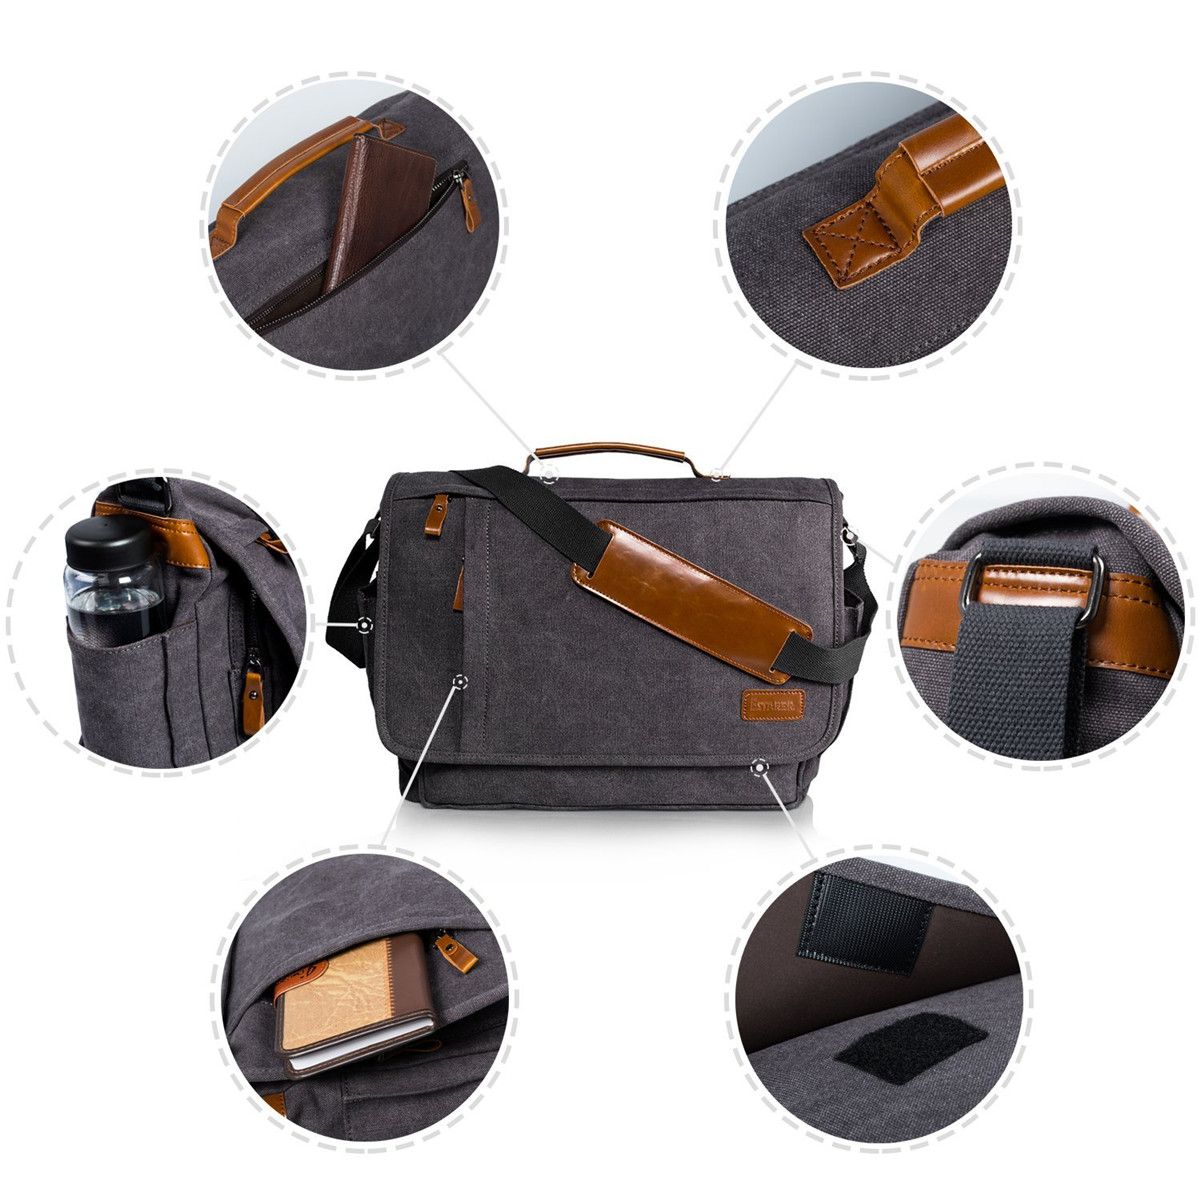 Canvas-Business-Laptop-Bag-Men-Crossbody-Computer-Bag-Shoulder-Bag-Handbag-for-15-inch-Notebook-1281549